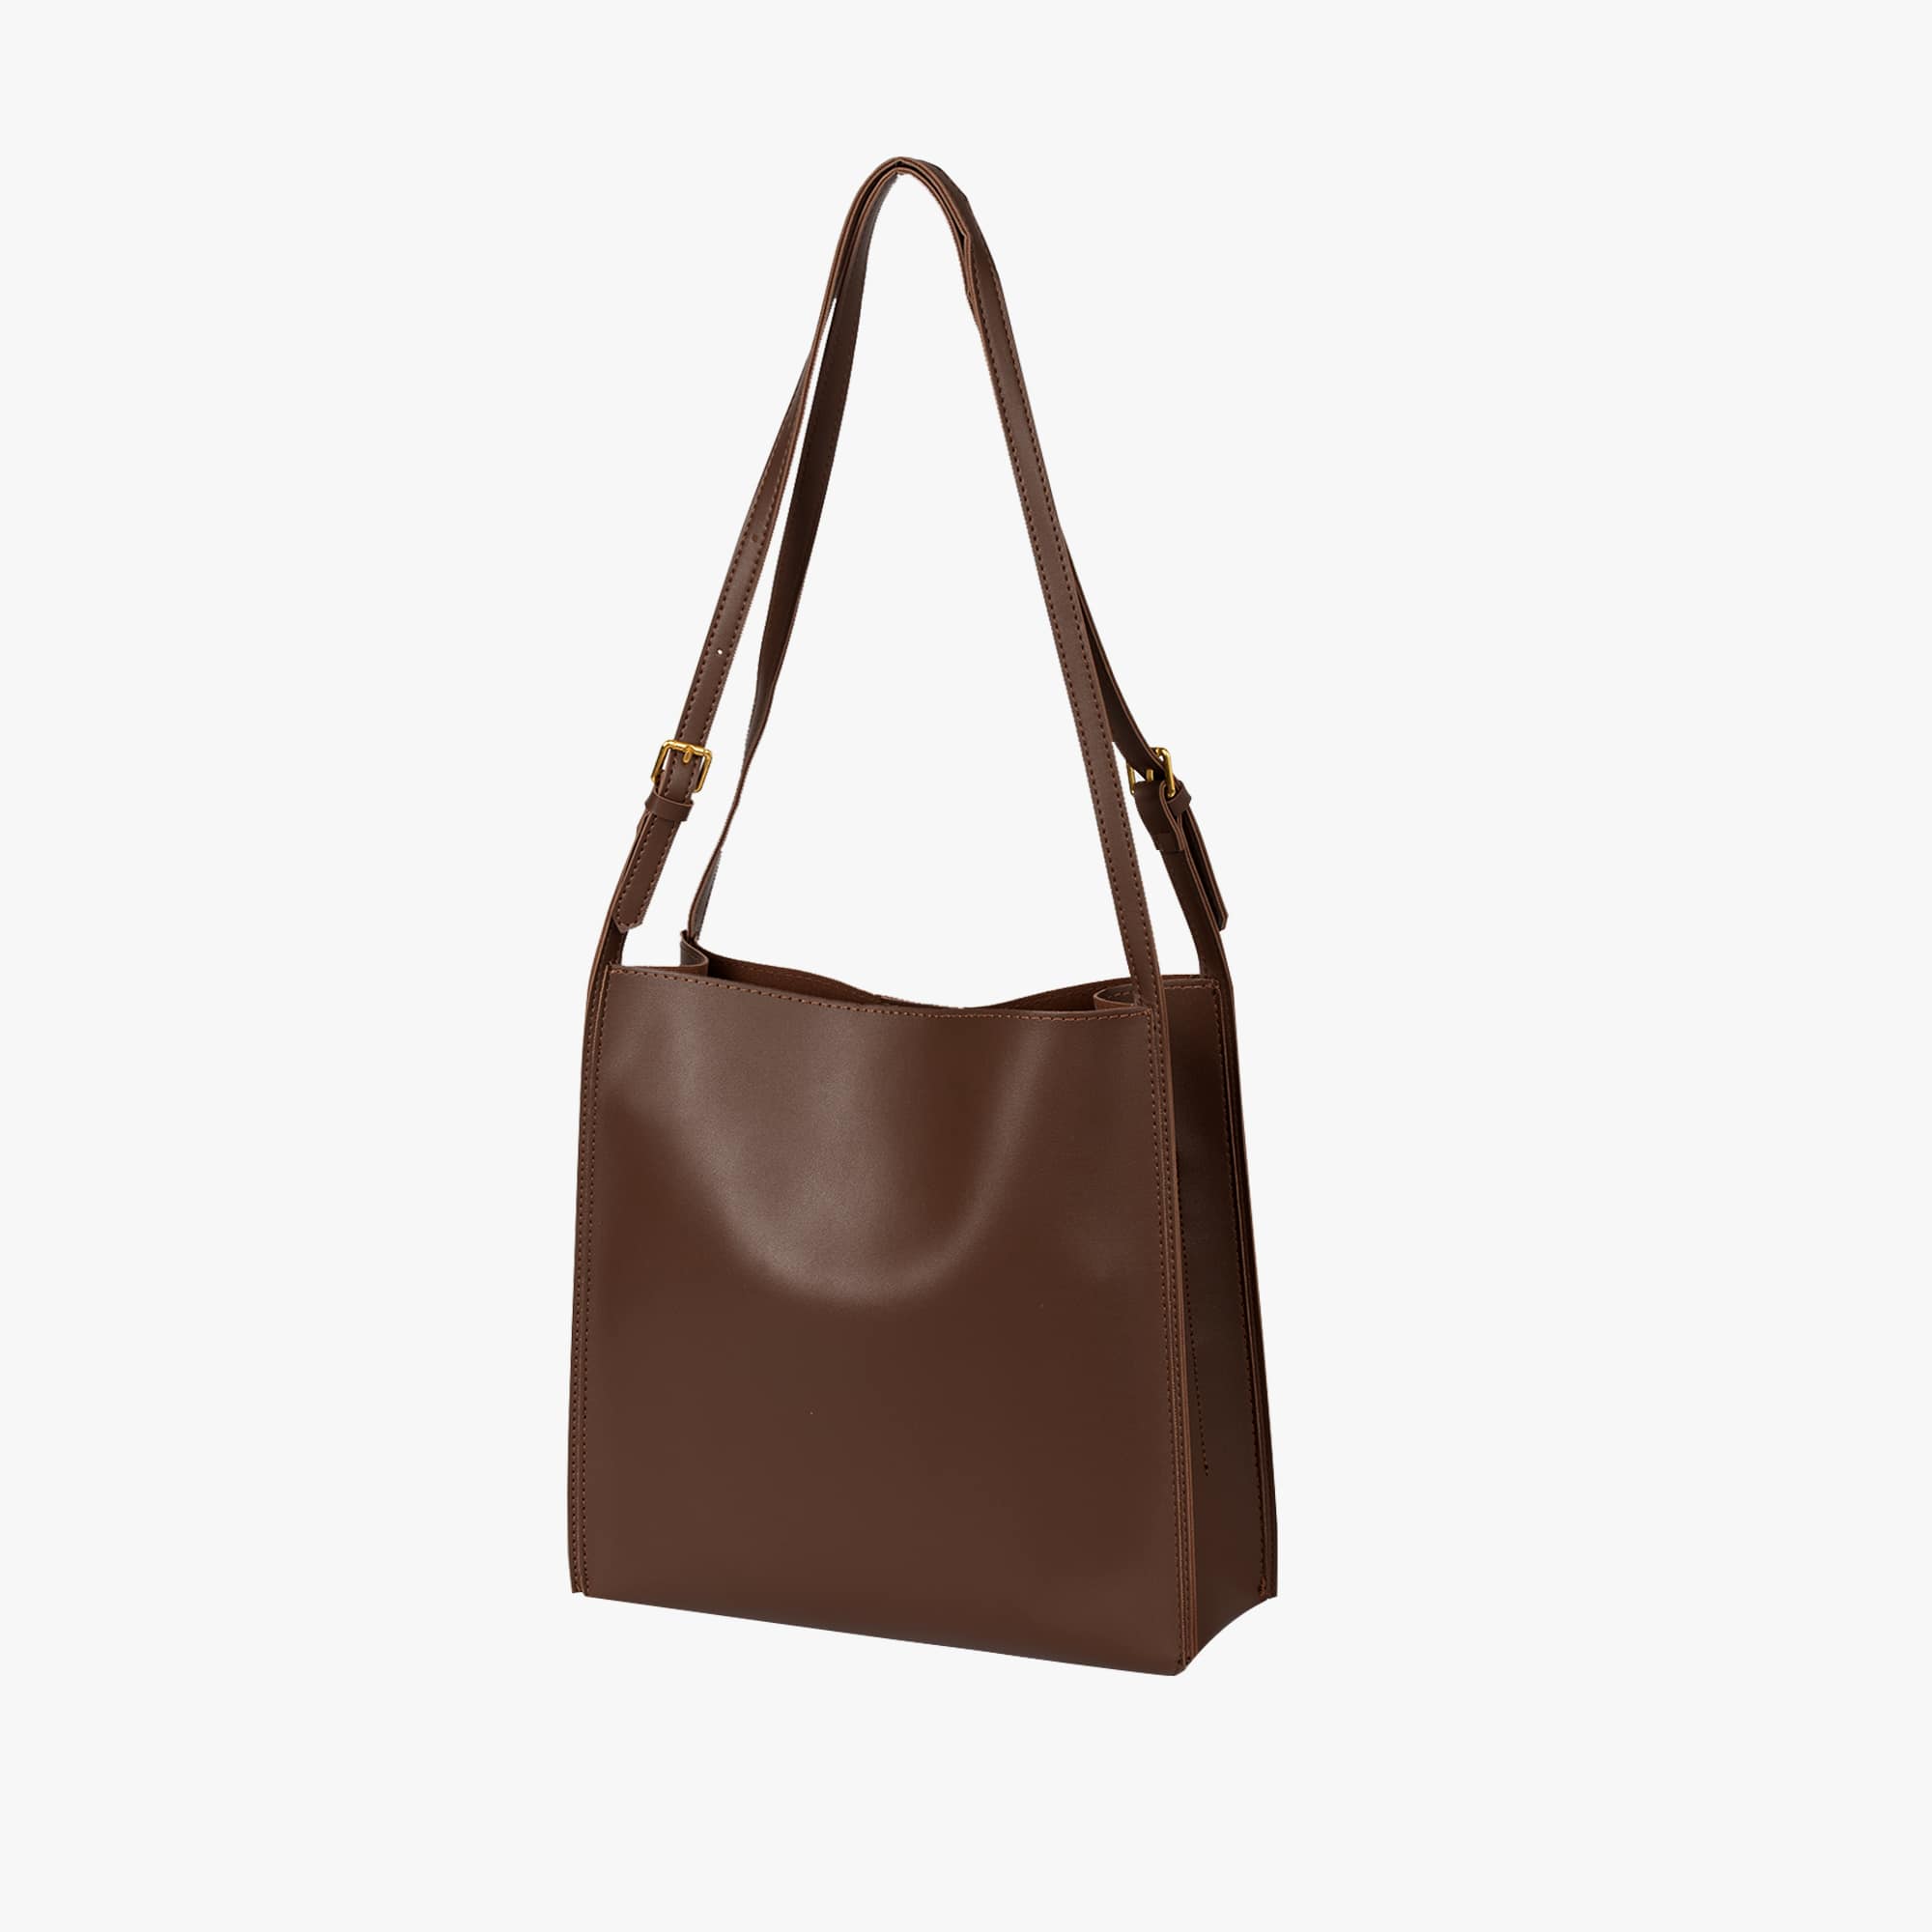 OLOEY Tote Bag for Women,Vegan Leather Simple Vintage Shoulder